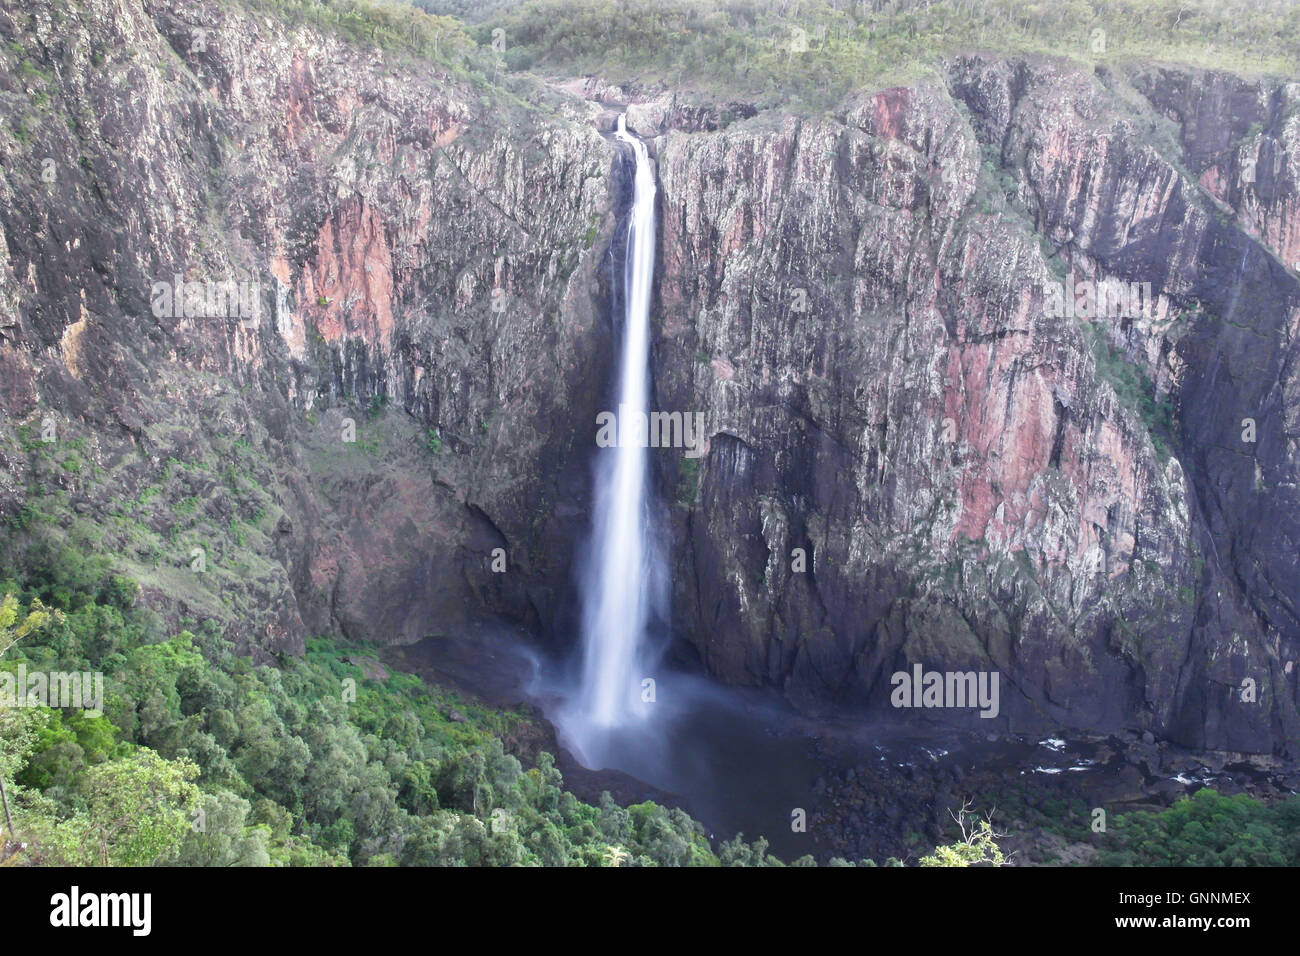 Célèbre Wallaman Falls de Girringun National Park, Queensland - Australie Banque D'Images